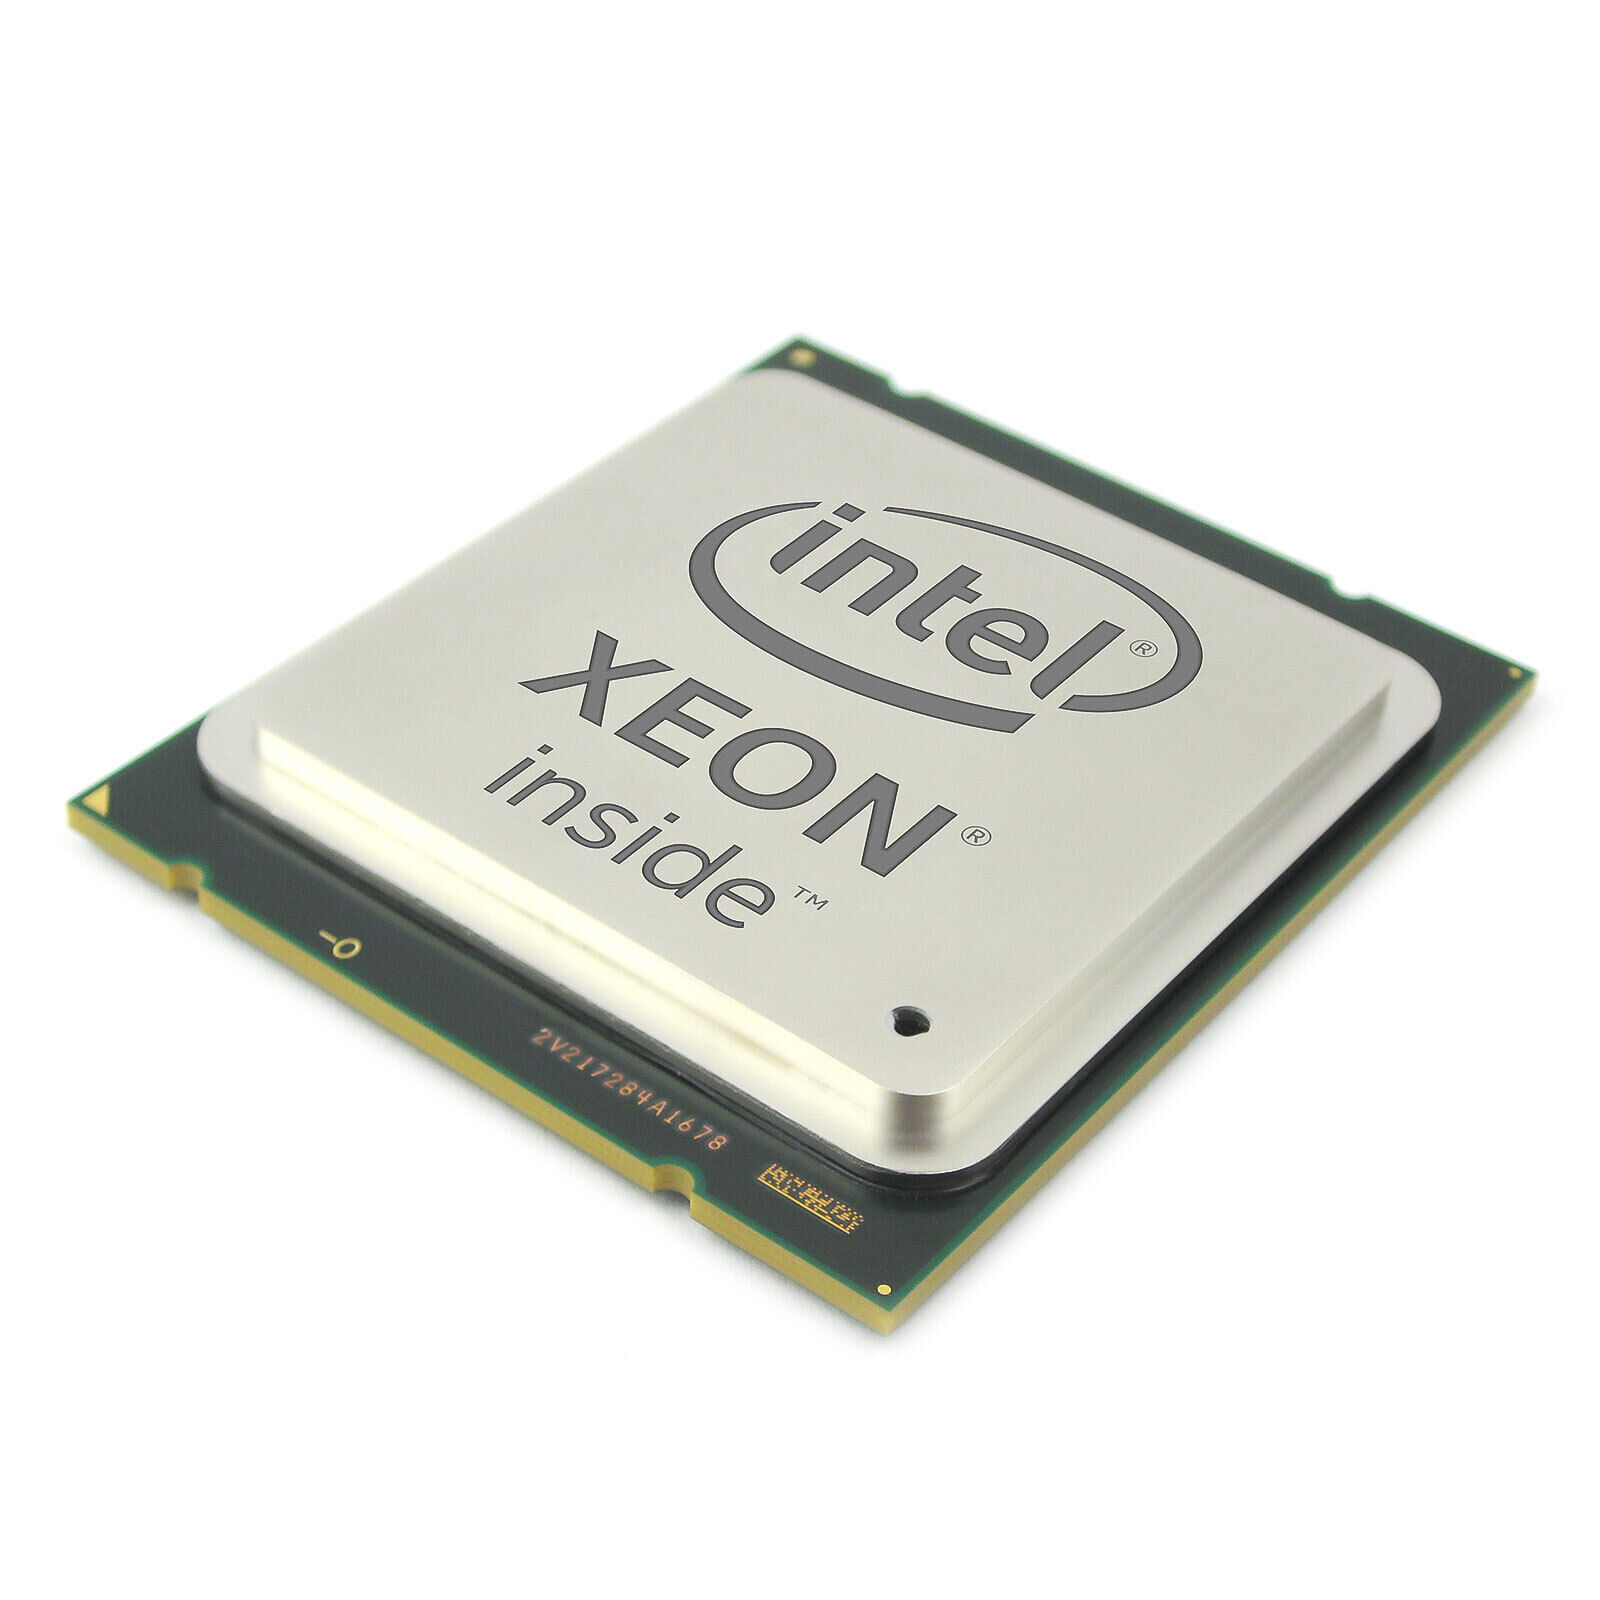 Intel Xeon E5-2630L v2 2.40GHz 6-Core LGA 2011 / Socket R Processor SR1AZ